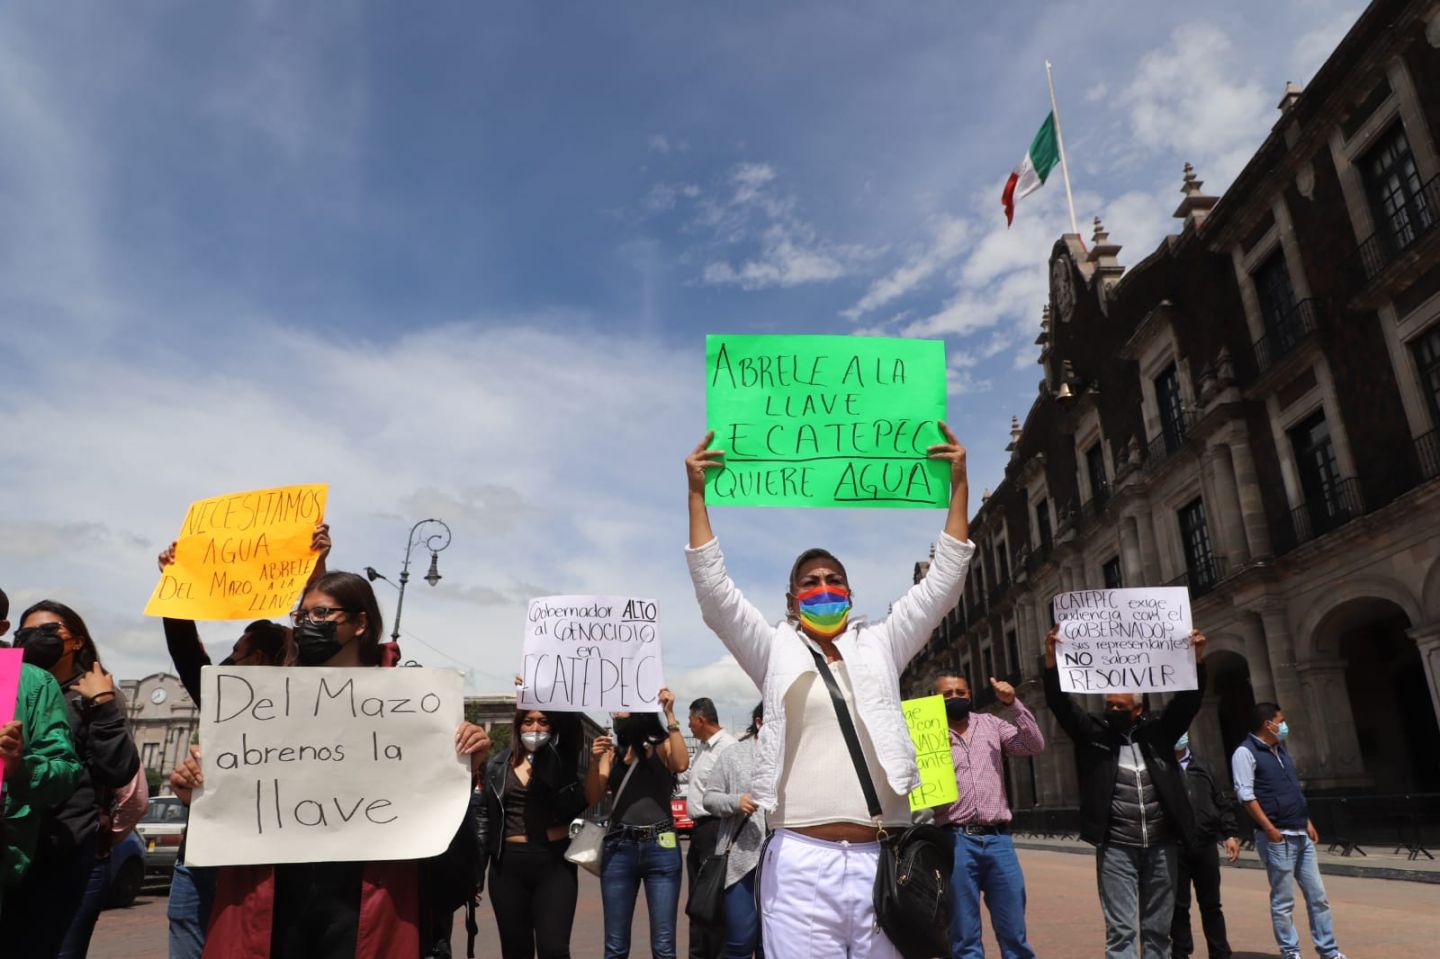 #Alcalde de Ecatepec y vecinos exigen a Del Mazo Más agua